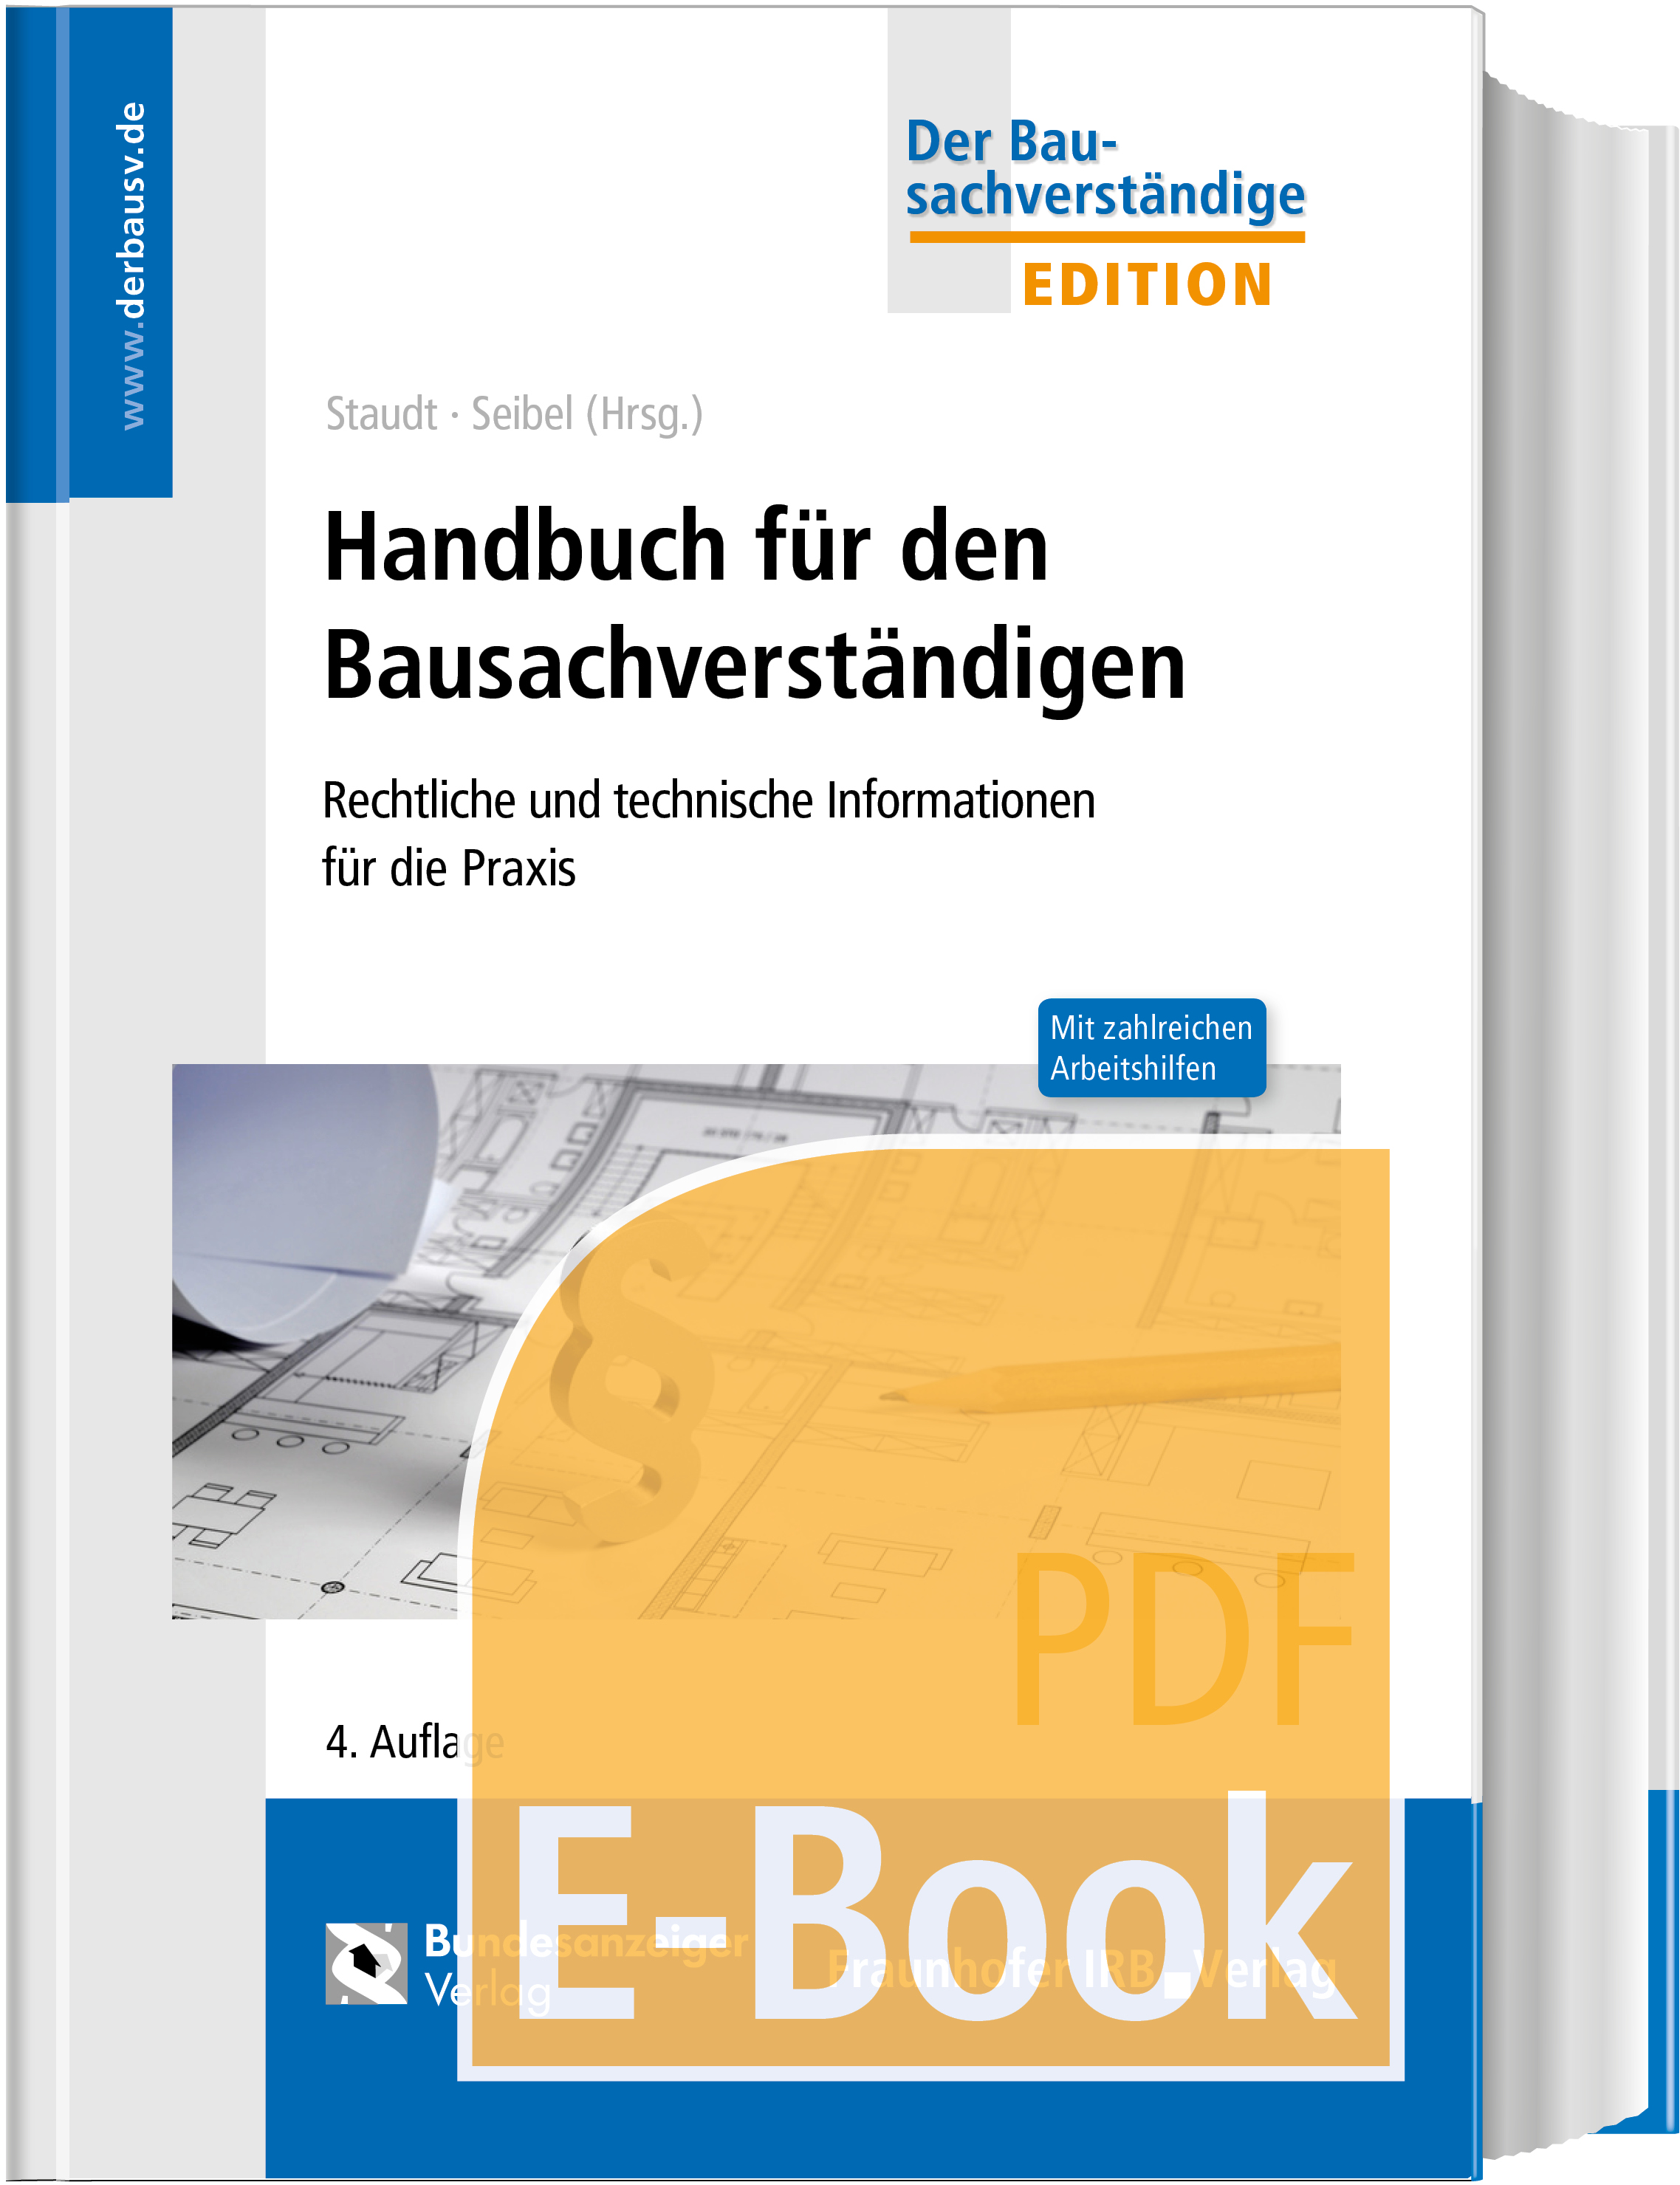 Handbuch für den Bausachverständigen (E-Book)